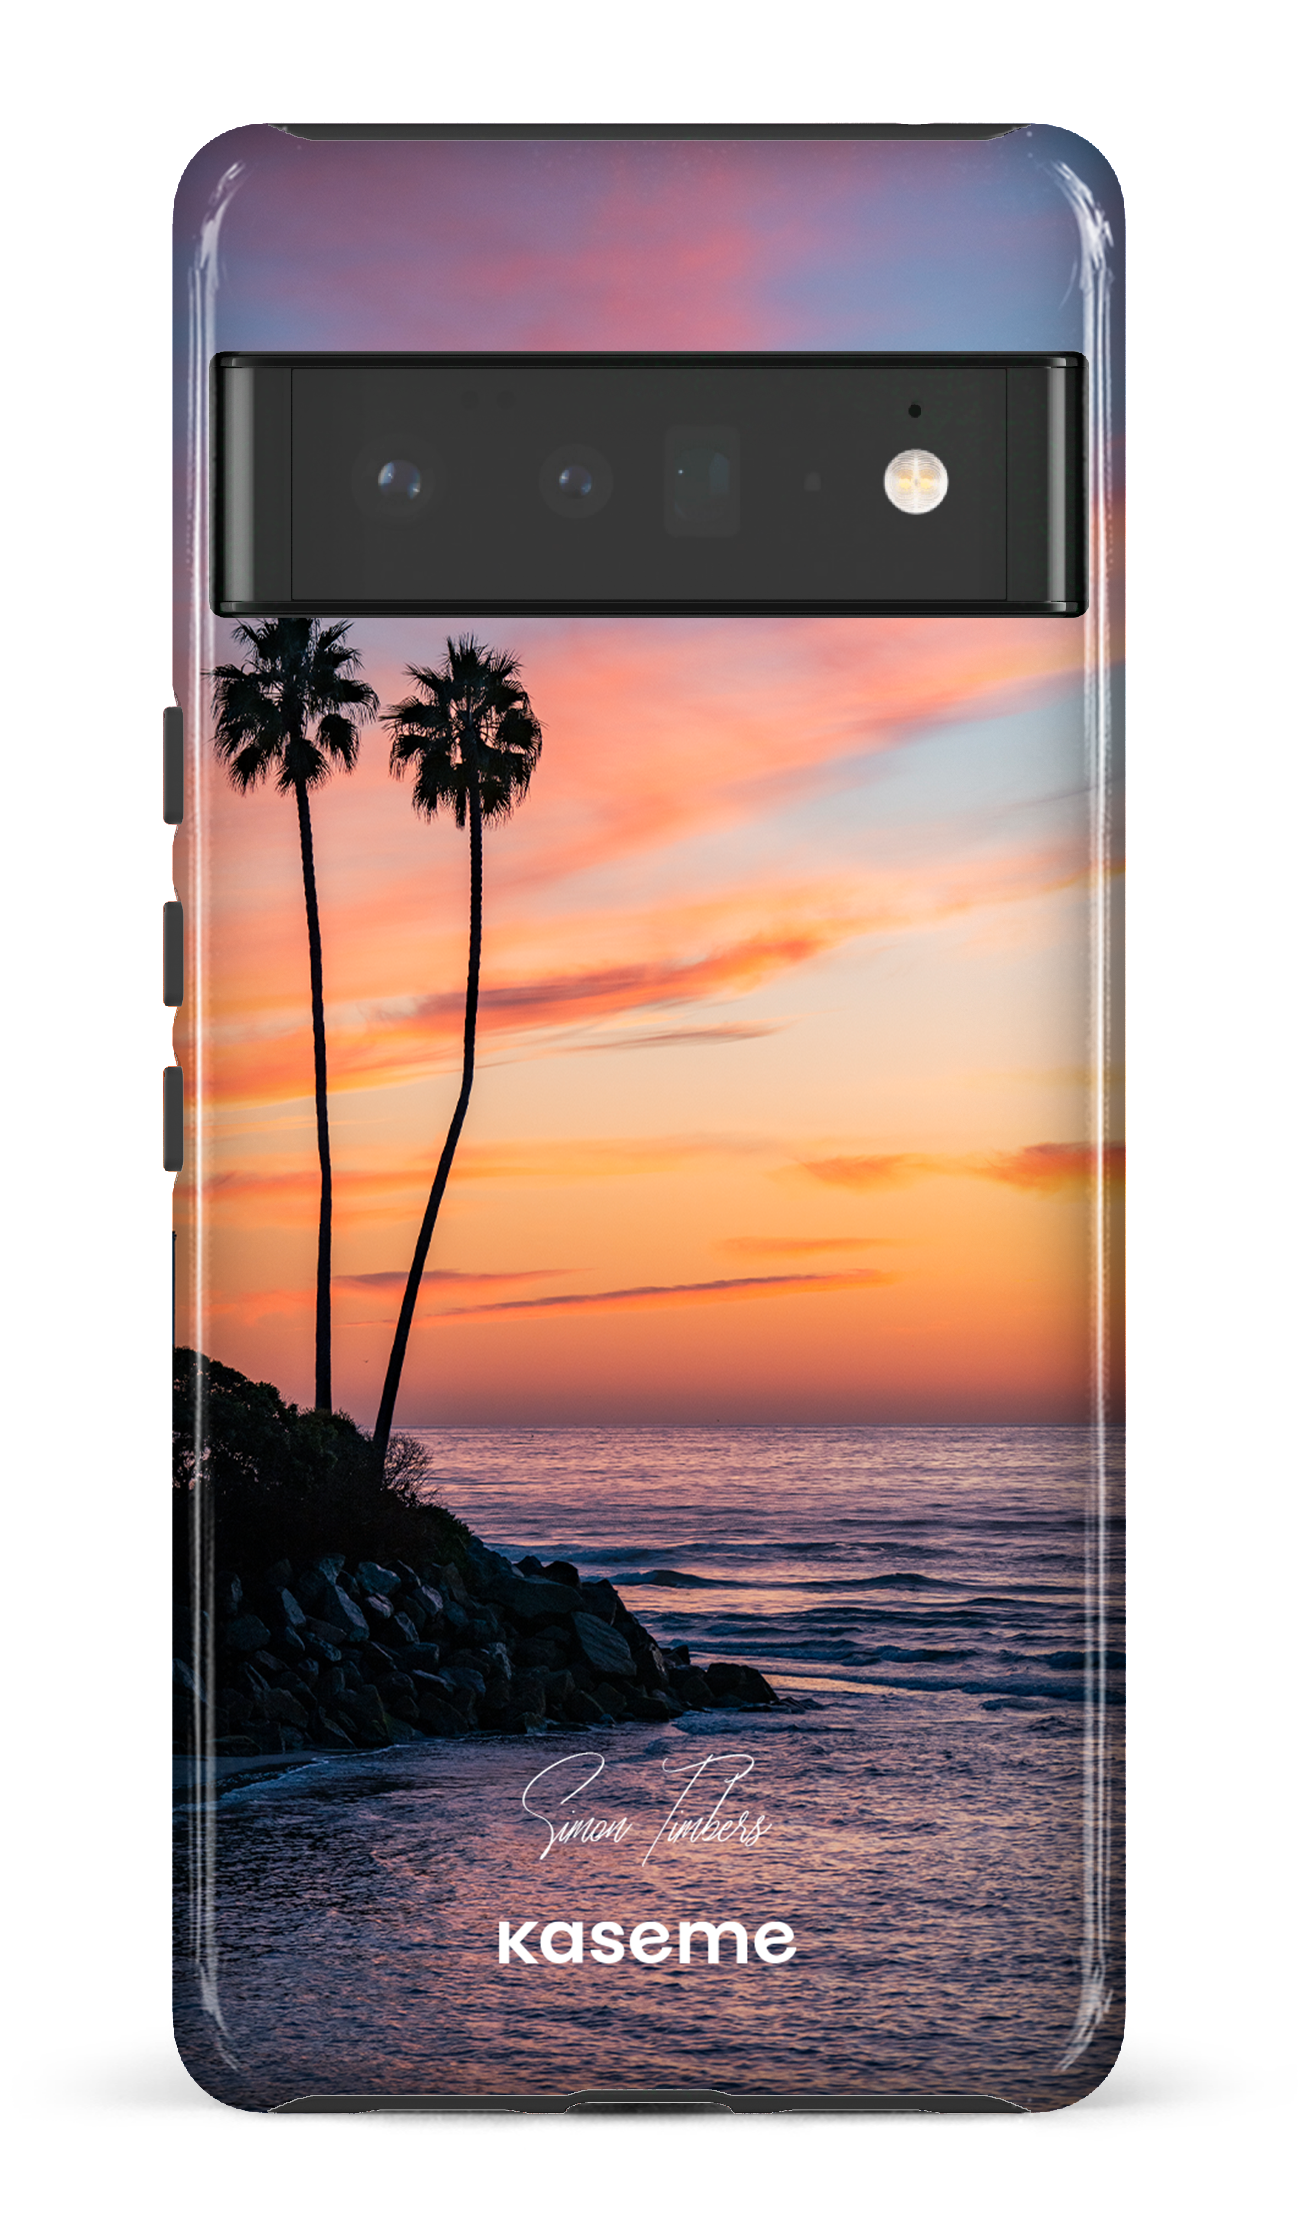 Sunset Palms by Simon Timbers - Google Pixel 6 pro